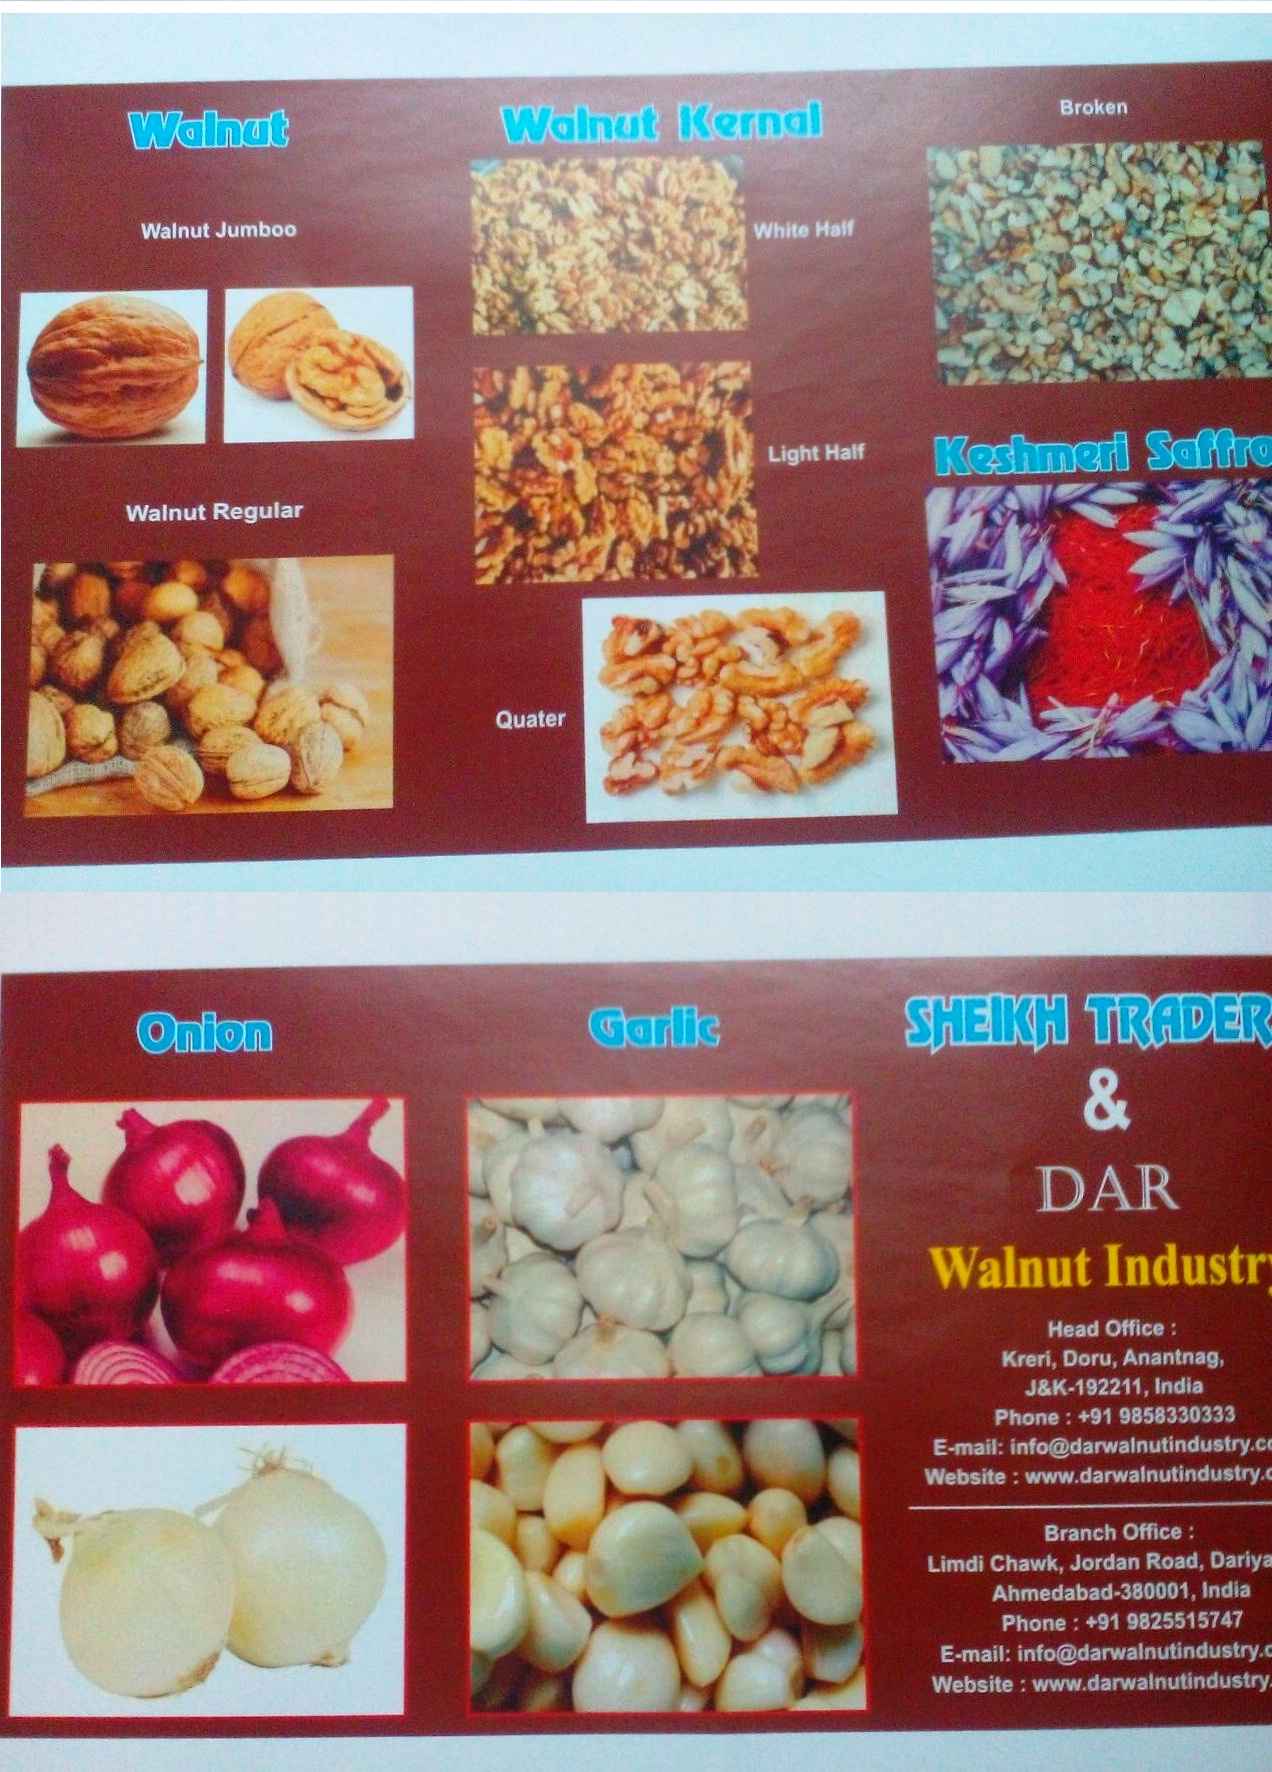 Dar Walnut Industry.